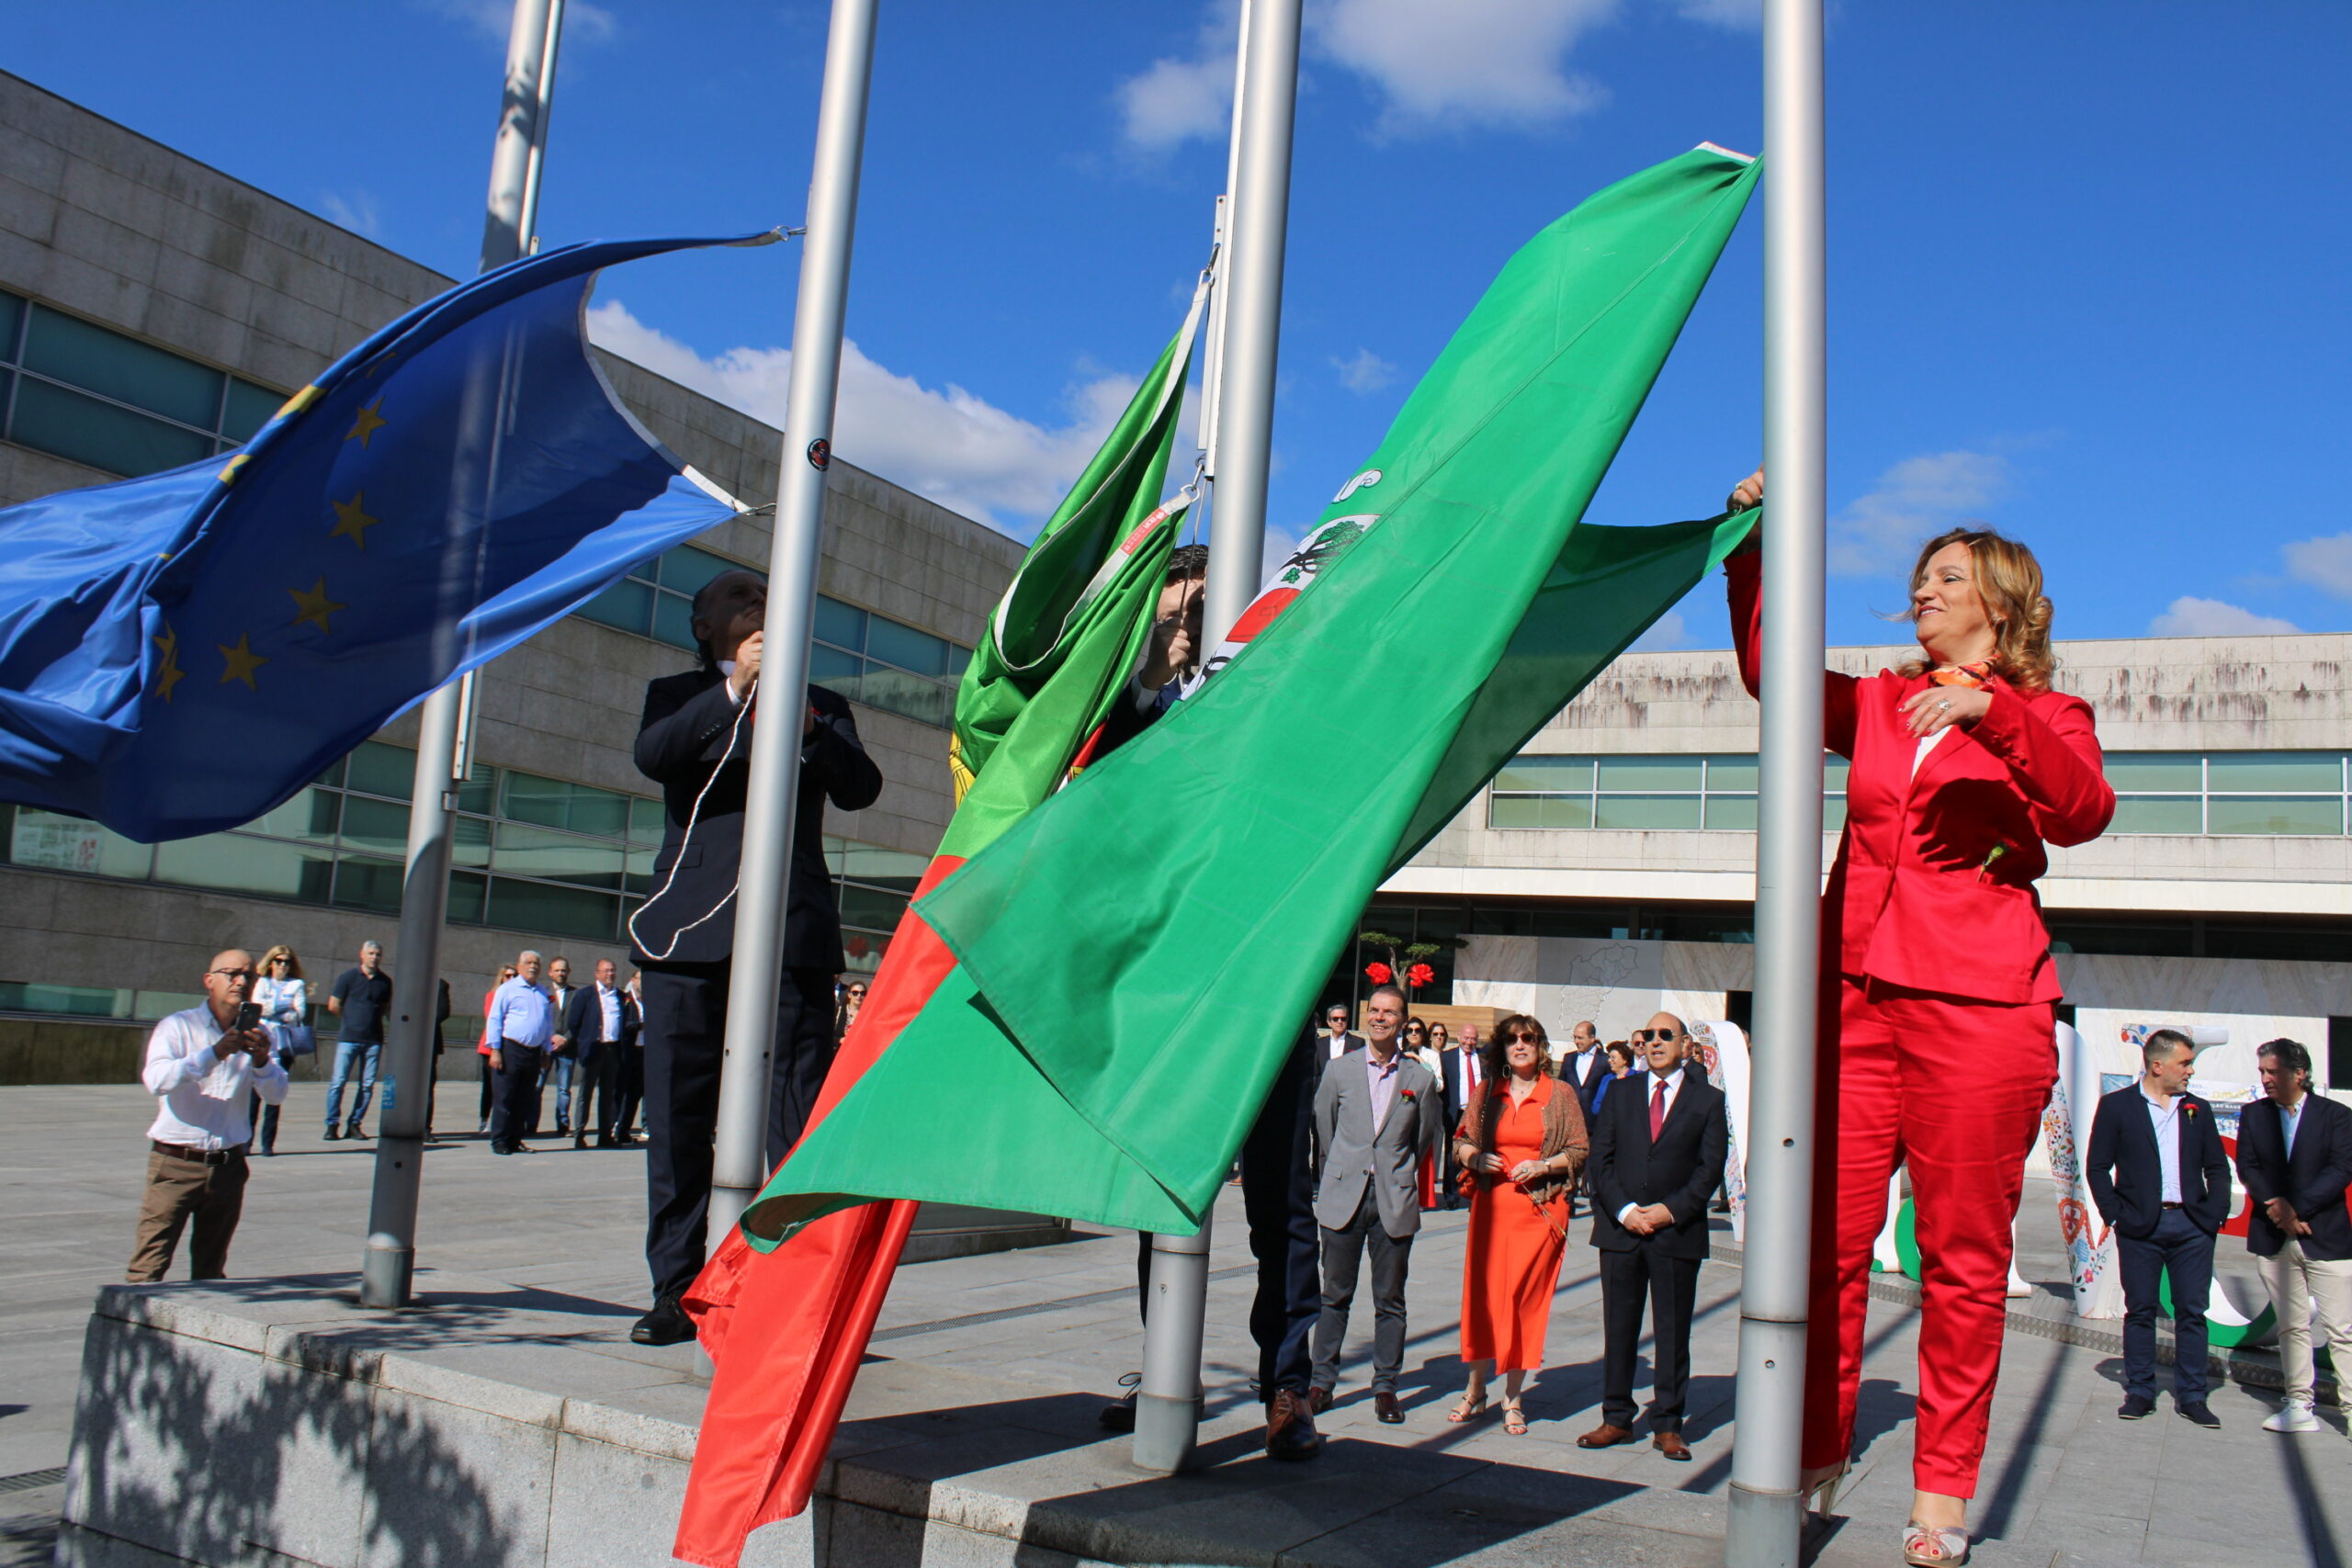 Vila Verde assume “determinação democrática” no “processo contínuo” de desenvolvimento